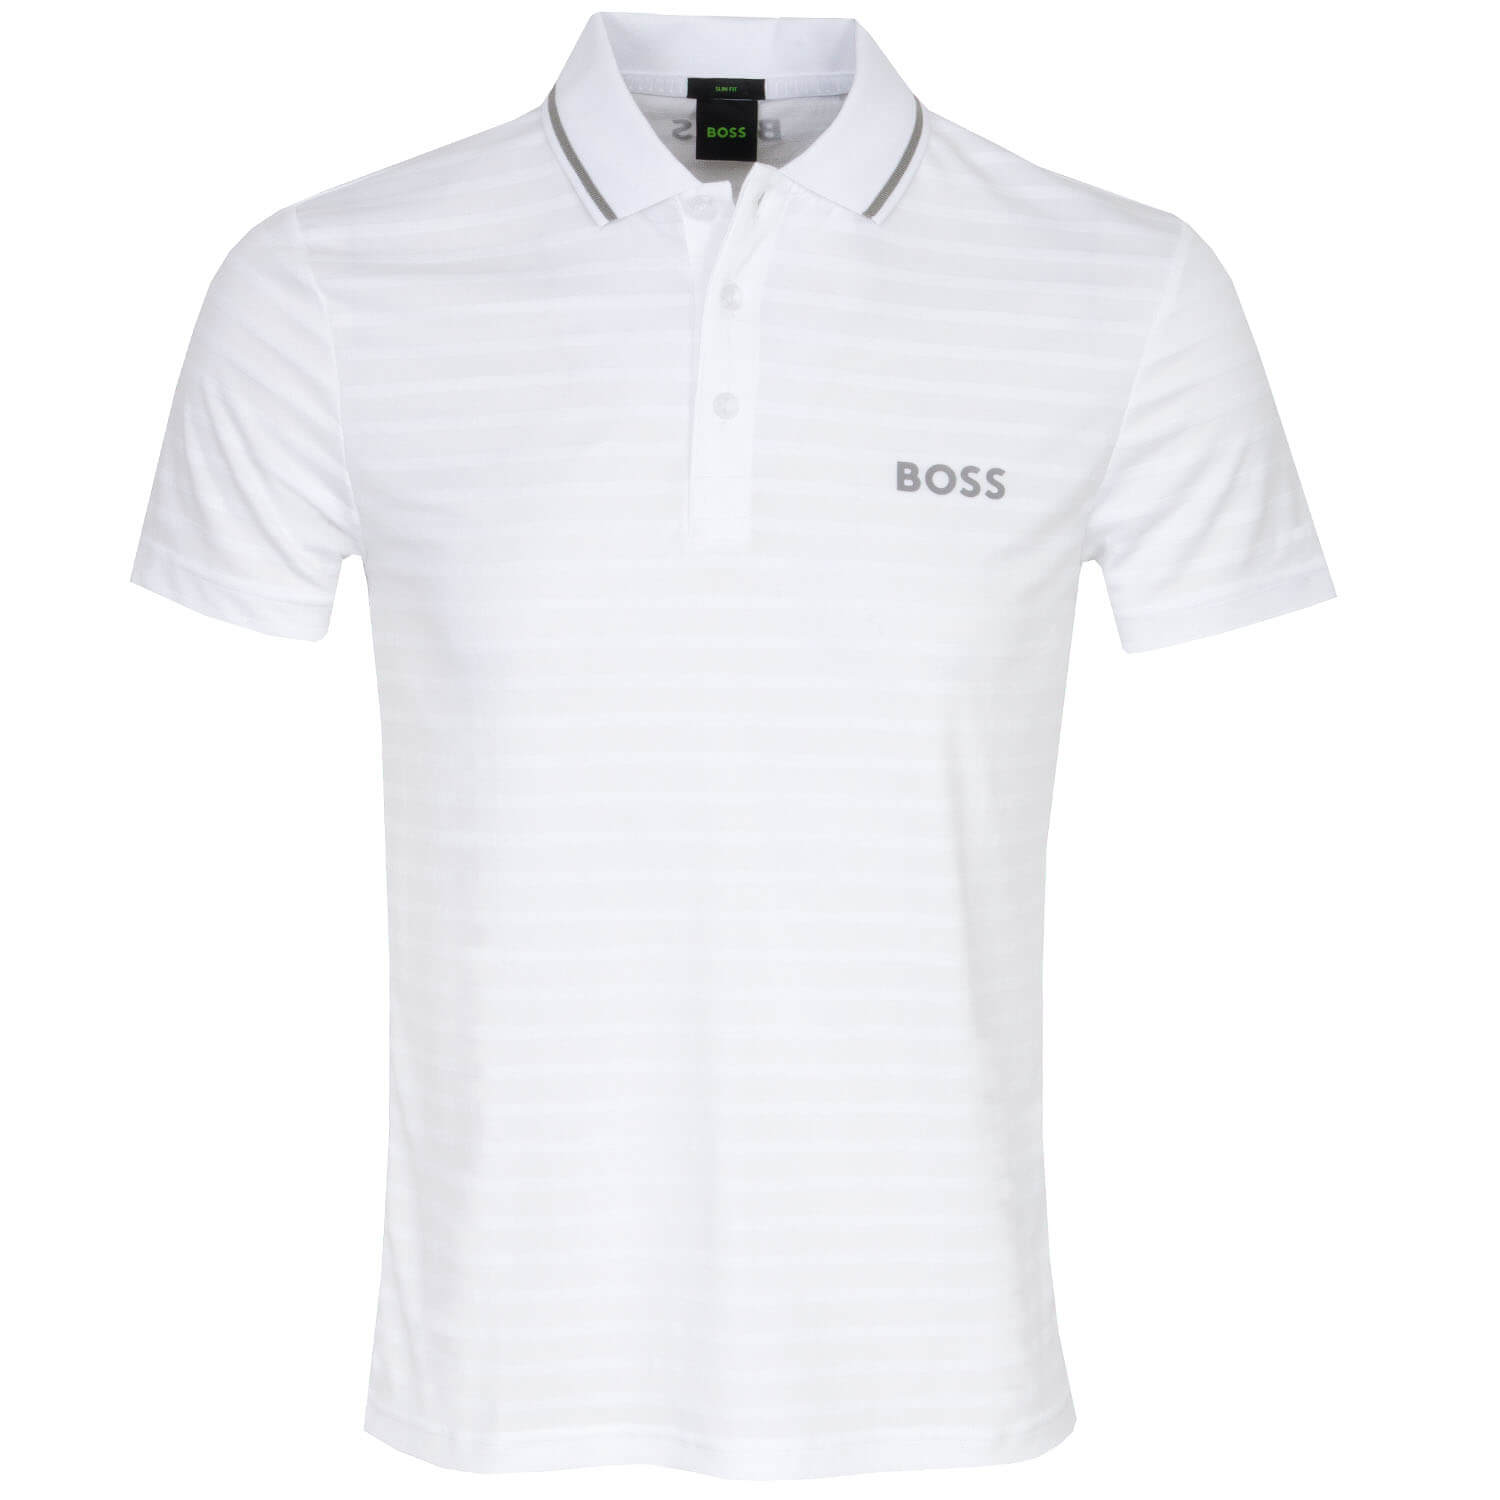 BOSS Pauletech 1 Polo Shirt White | Scottsdale Golf